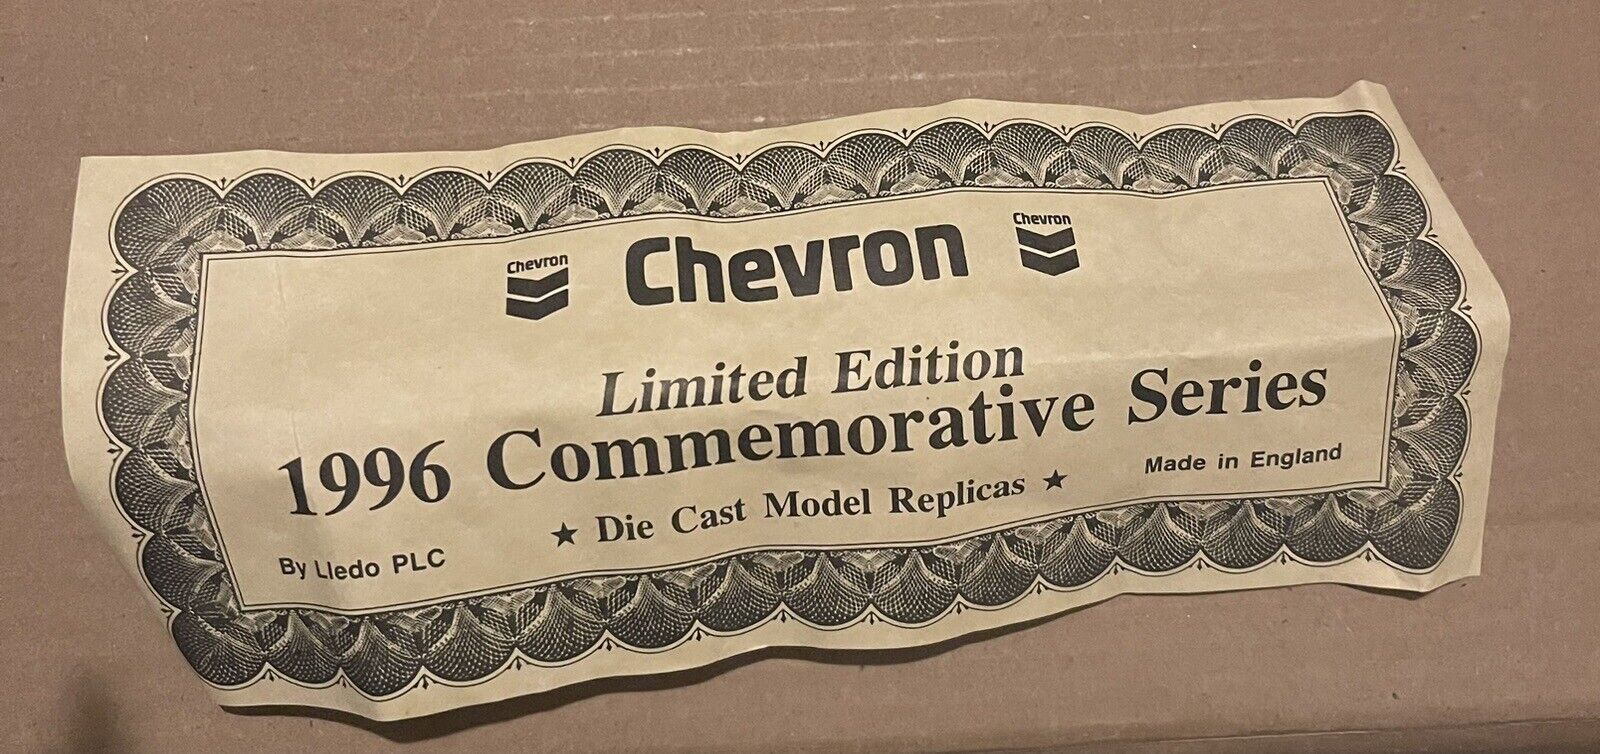 Chevron Limited Edition 1996 Commemorative Series 